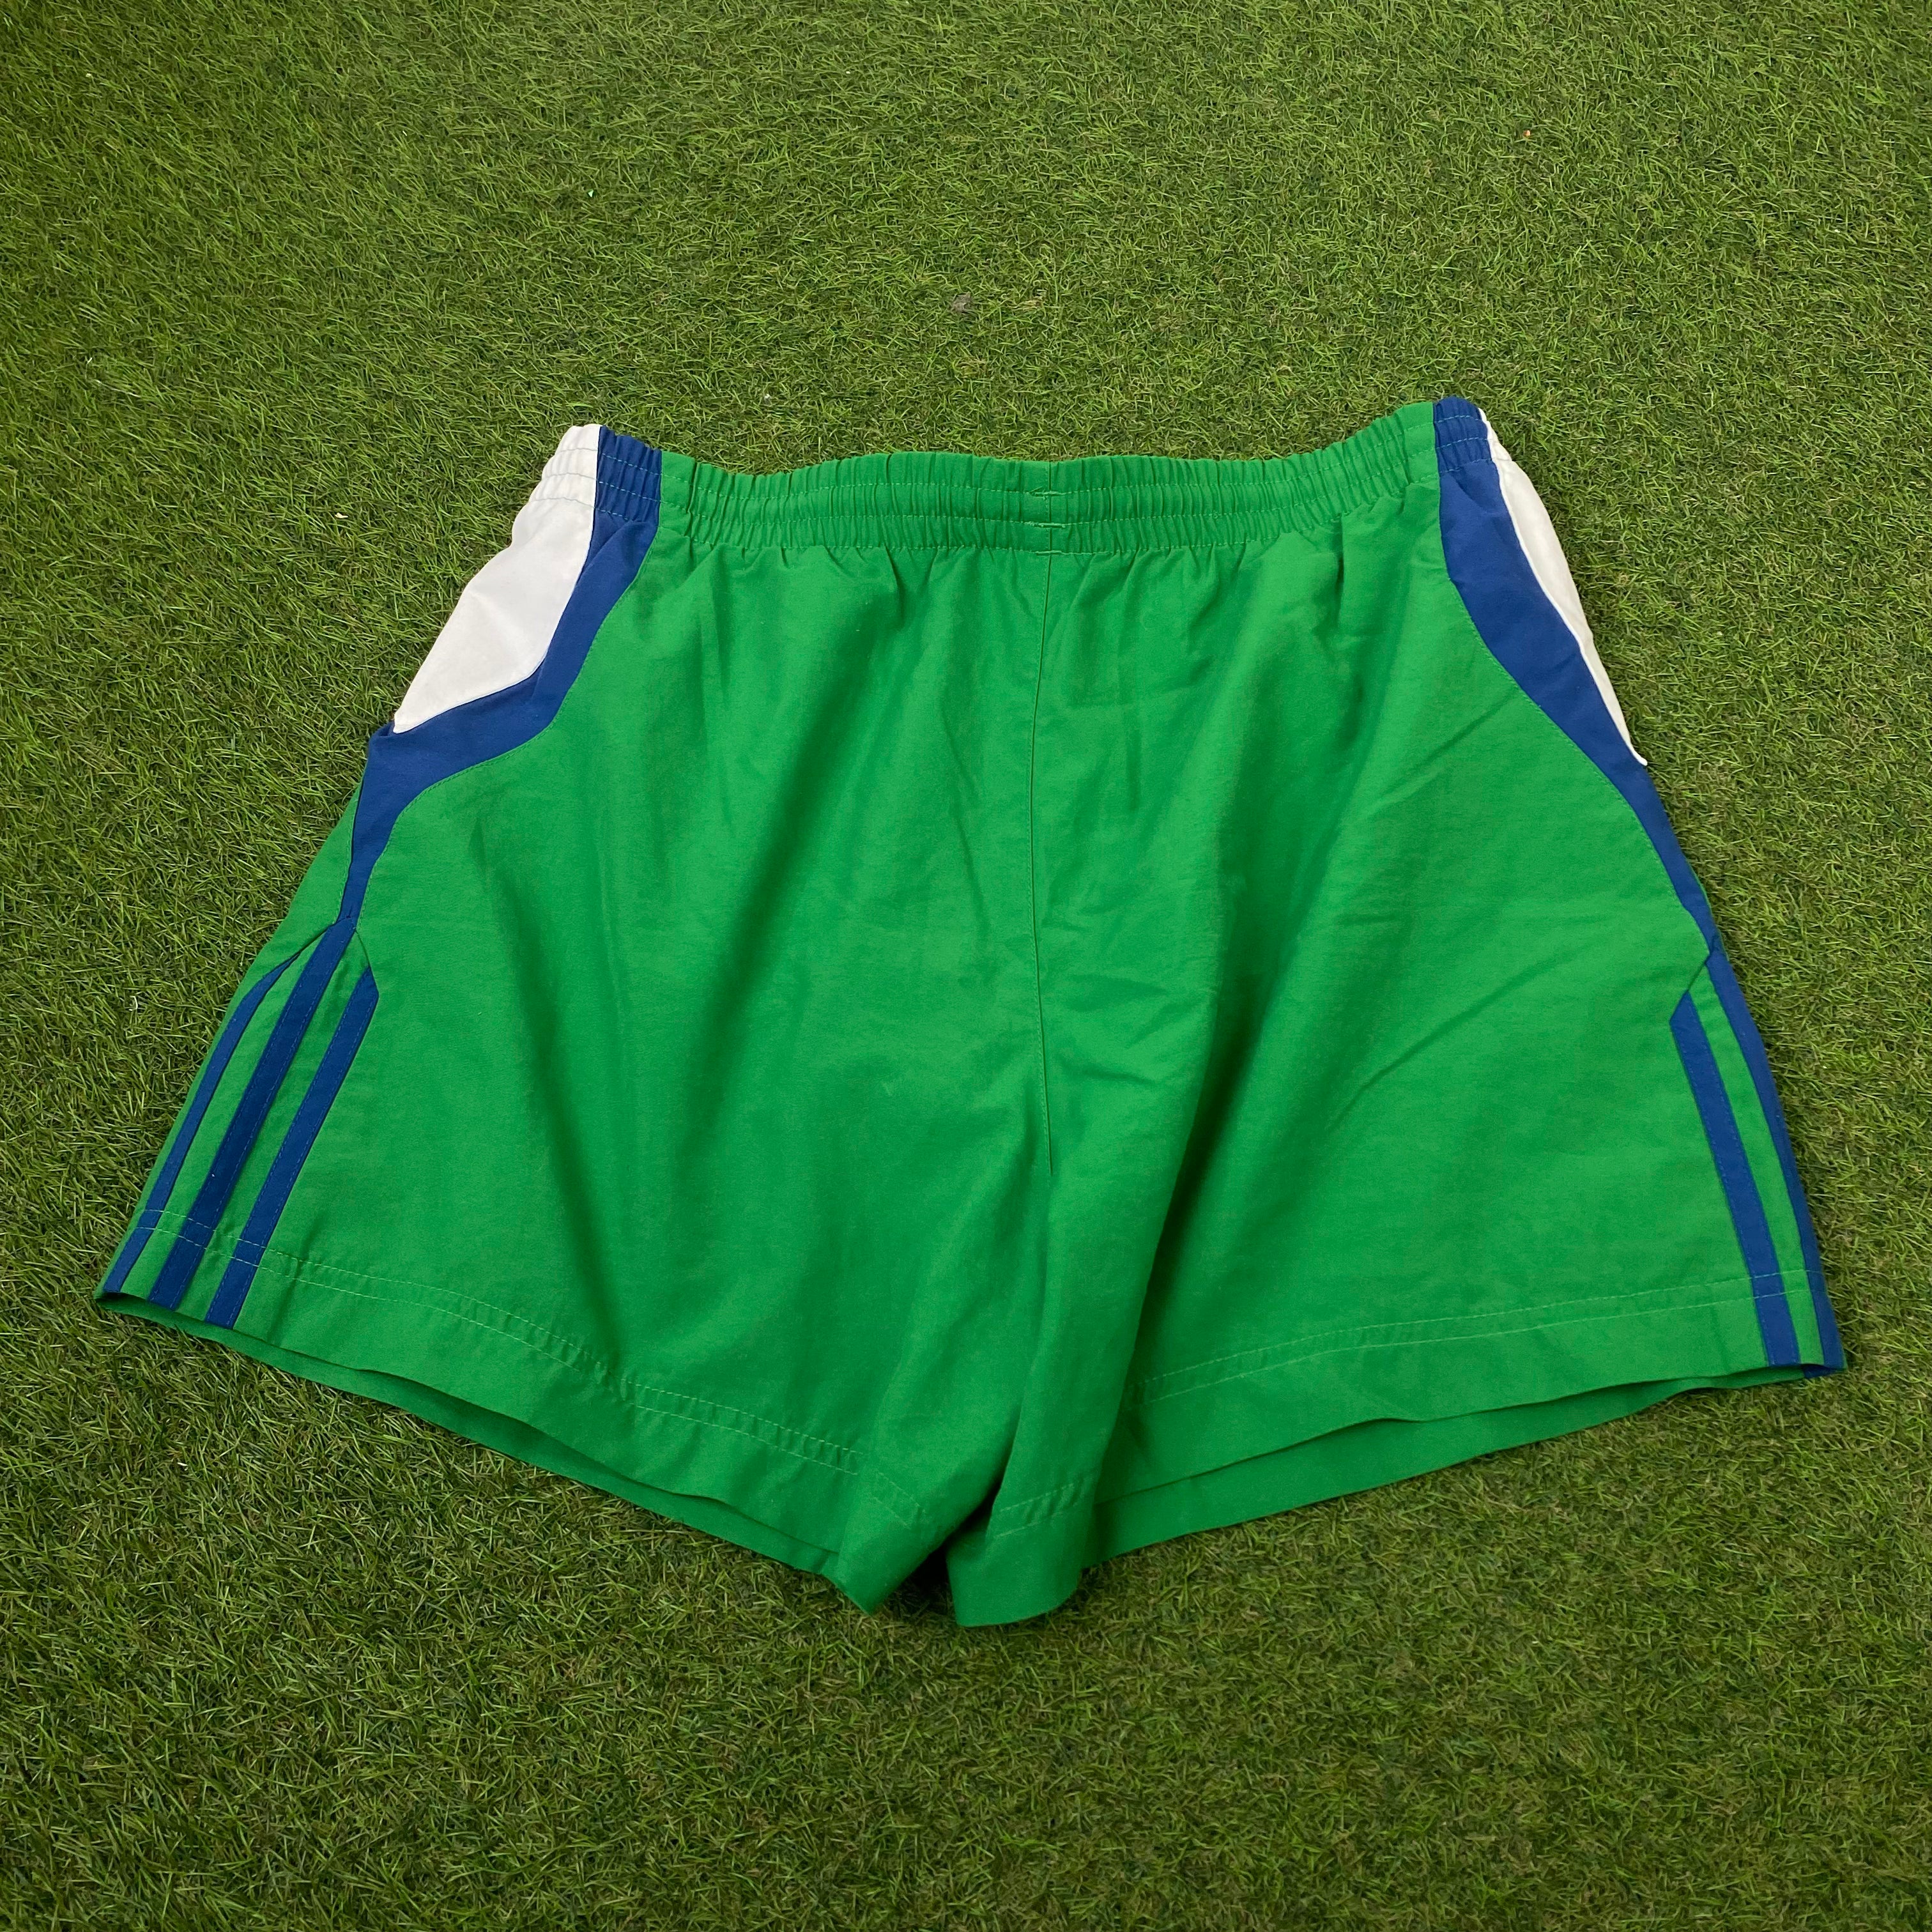 90s Adidas Shorts Green Medium